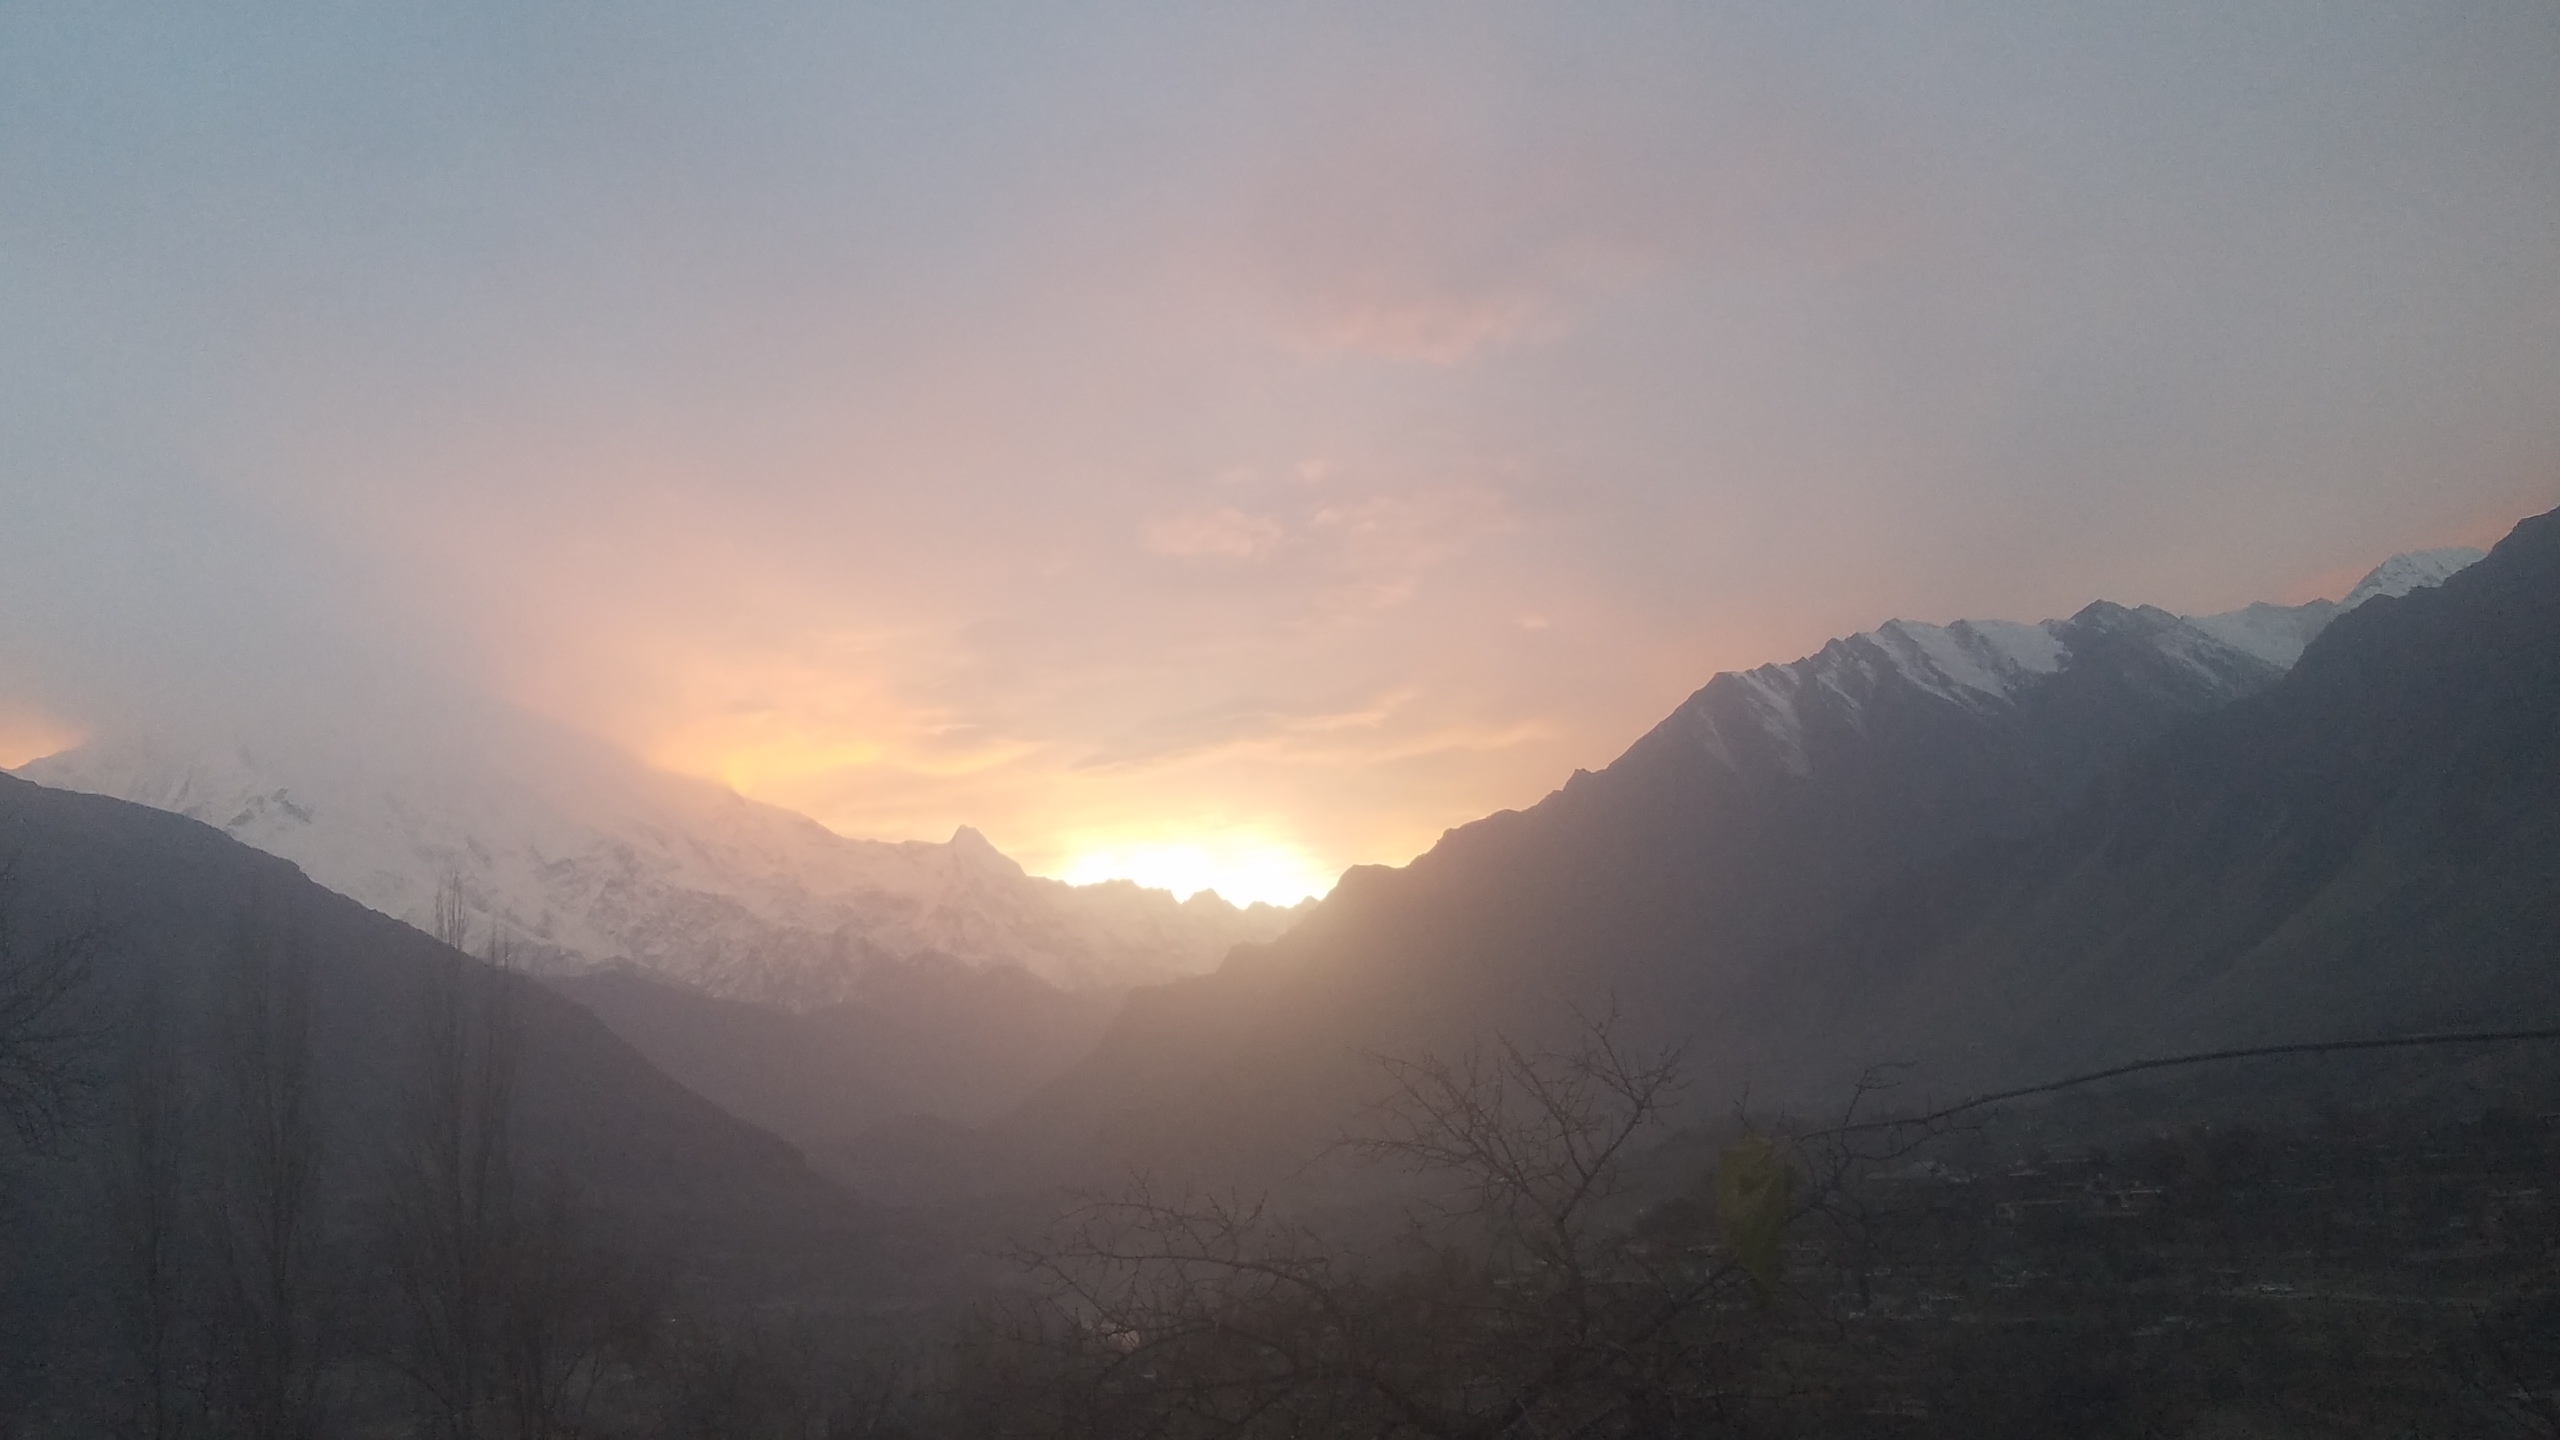 Evening shoot fro karim abad Hunza Towards Hachindar peak